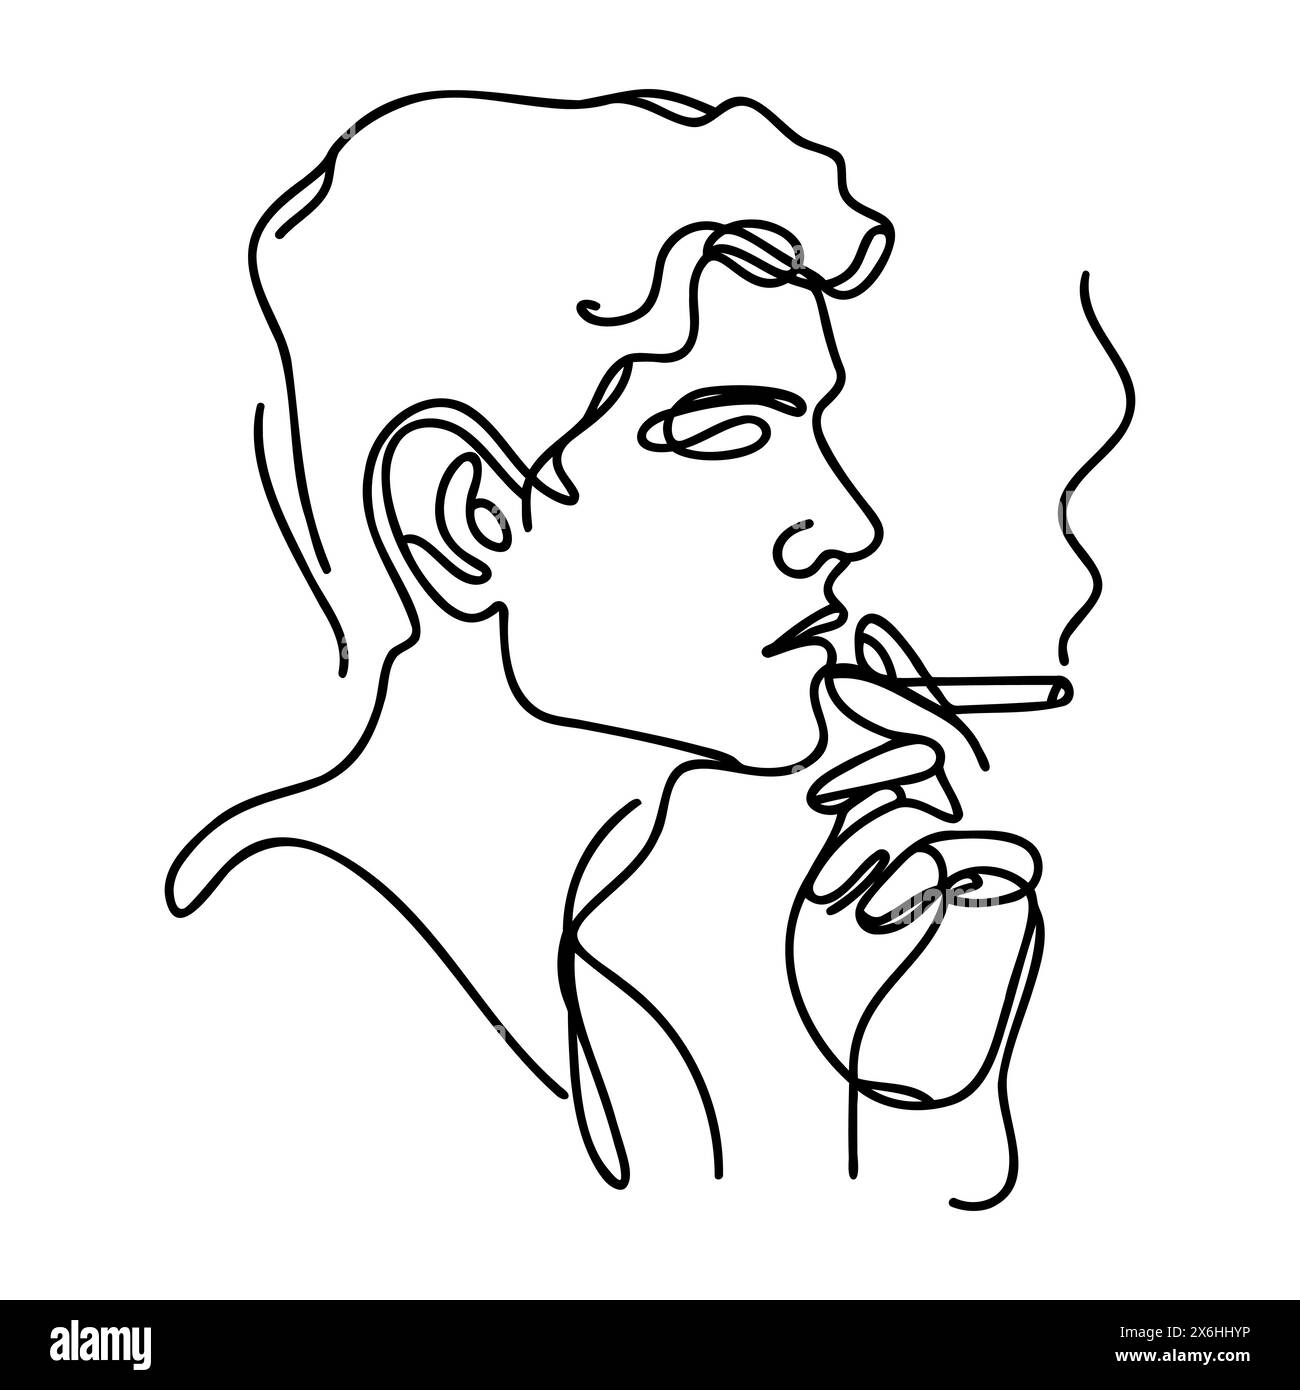 Une ligne continue dessine un homme fumant une cigarette. Illustration plate de contour dessinée à la main isolée sur fond blanc. Illustration de Vecteur